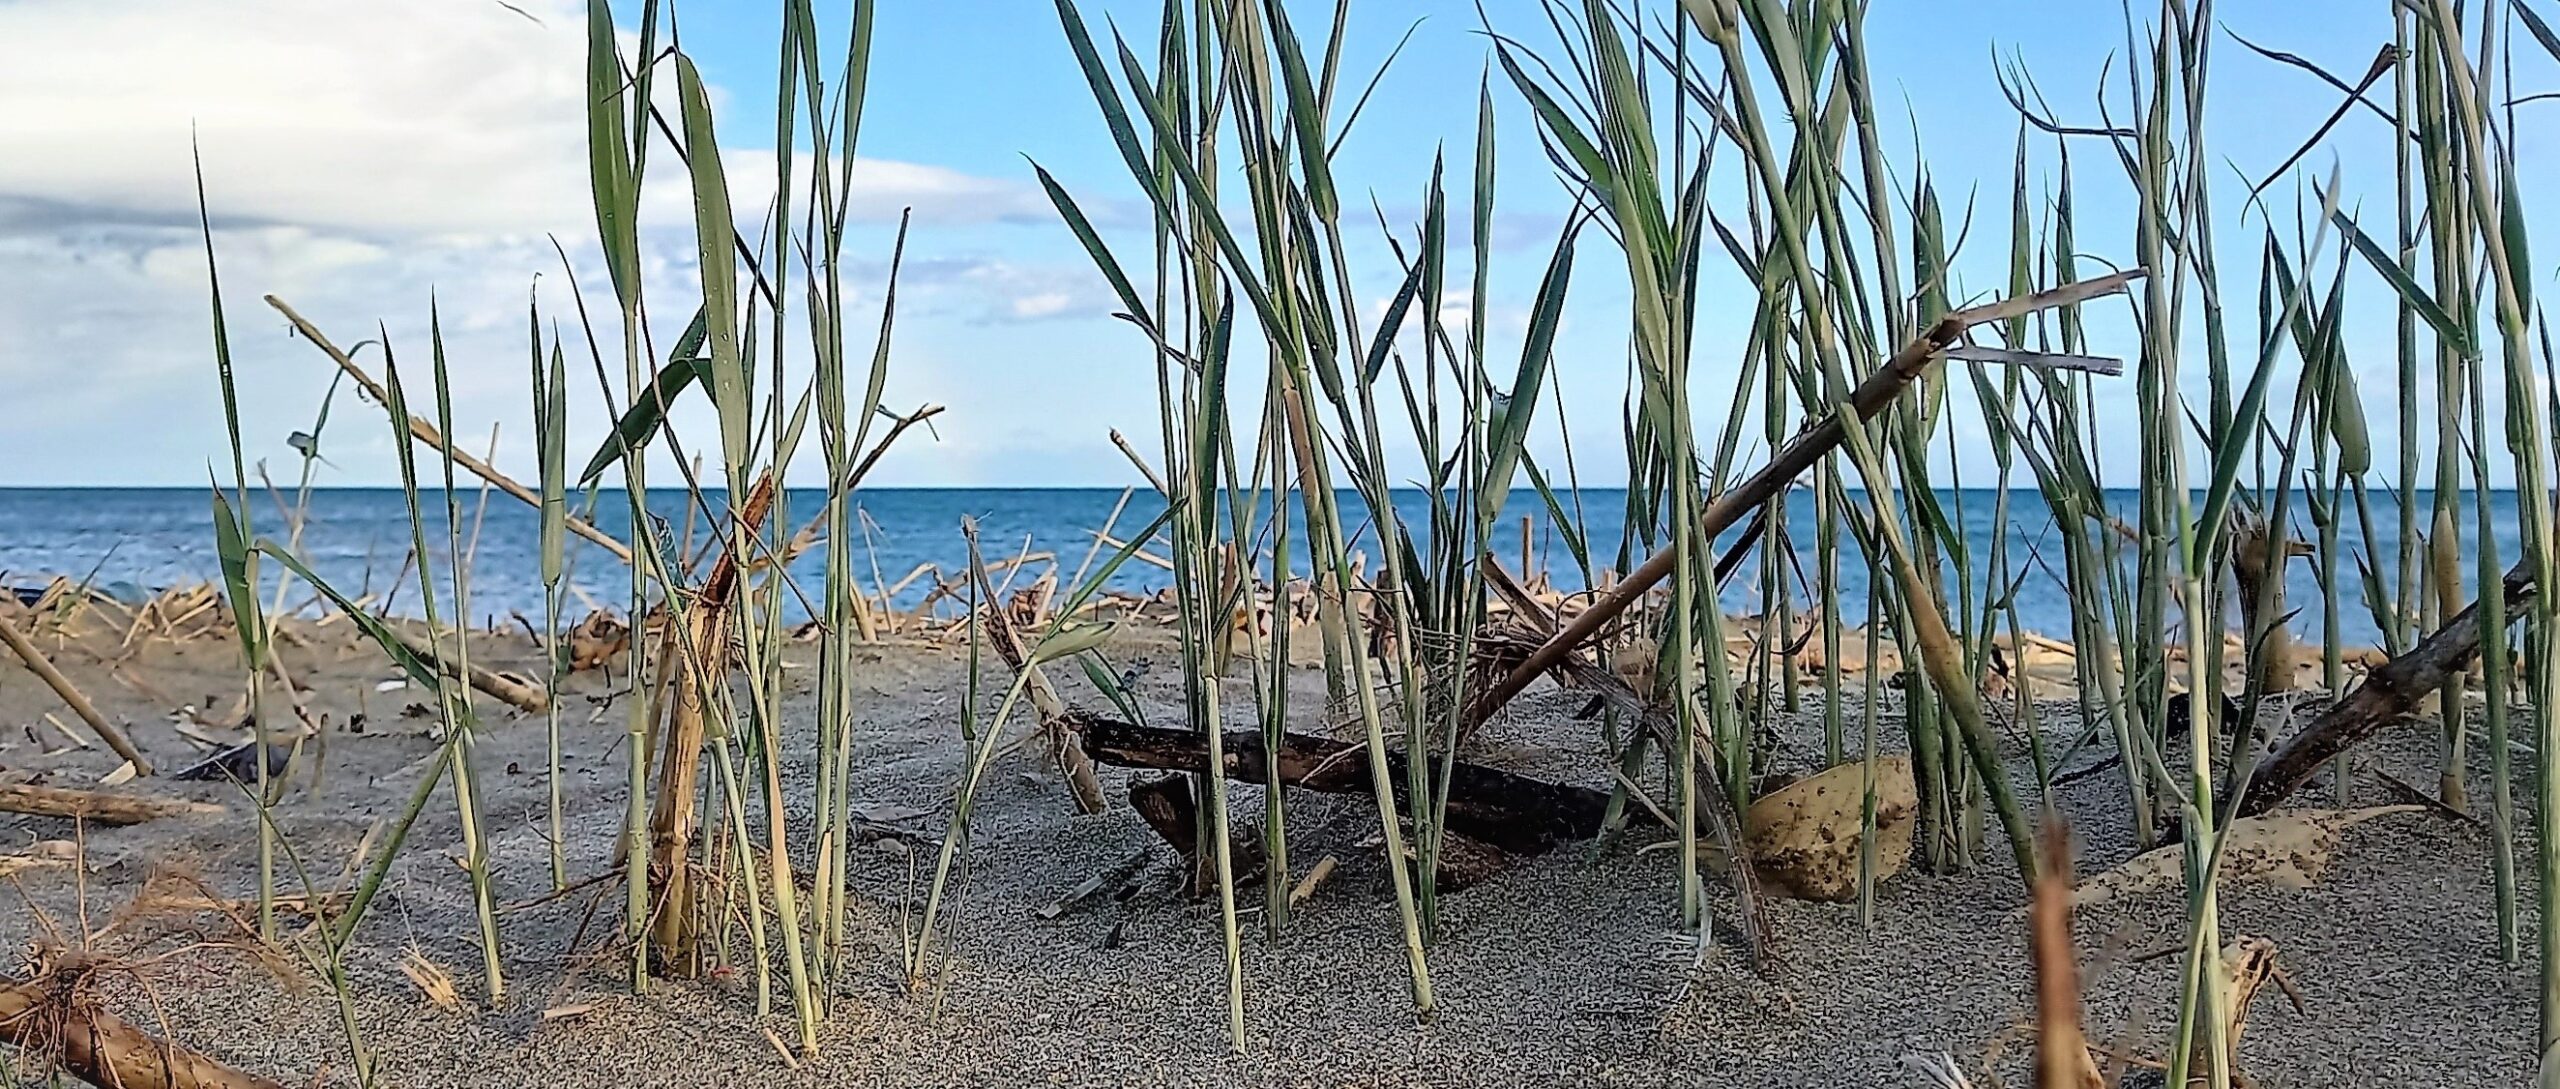 ripristino oasi della playa catania visionaria museo dello spazio imprints of peace cerchi d'oro